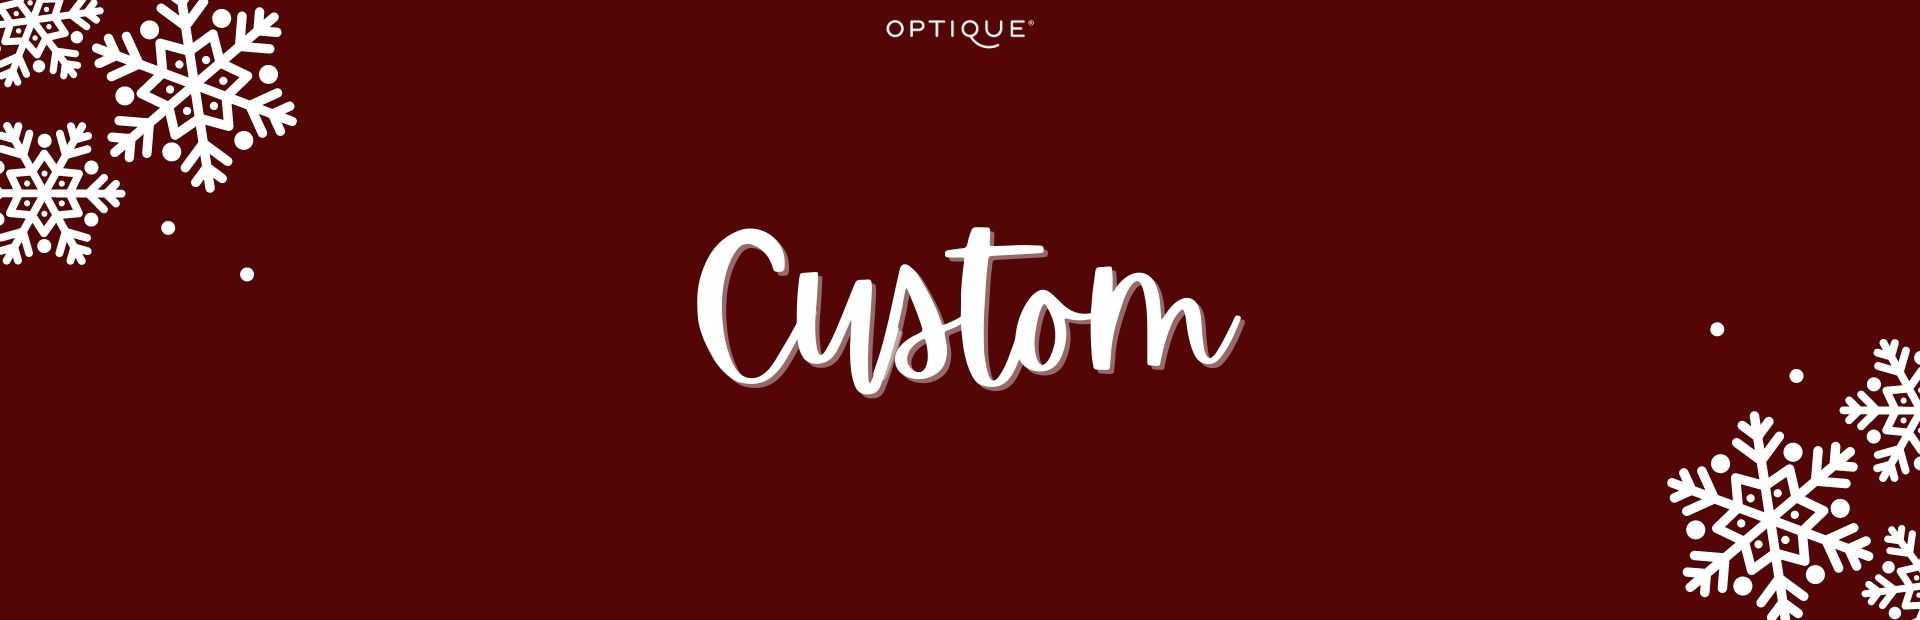 Spersonalizuj swój model Ray-Ban oraz Oakley - Custom w Opticue